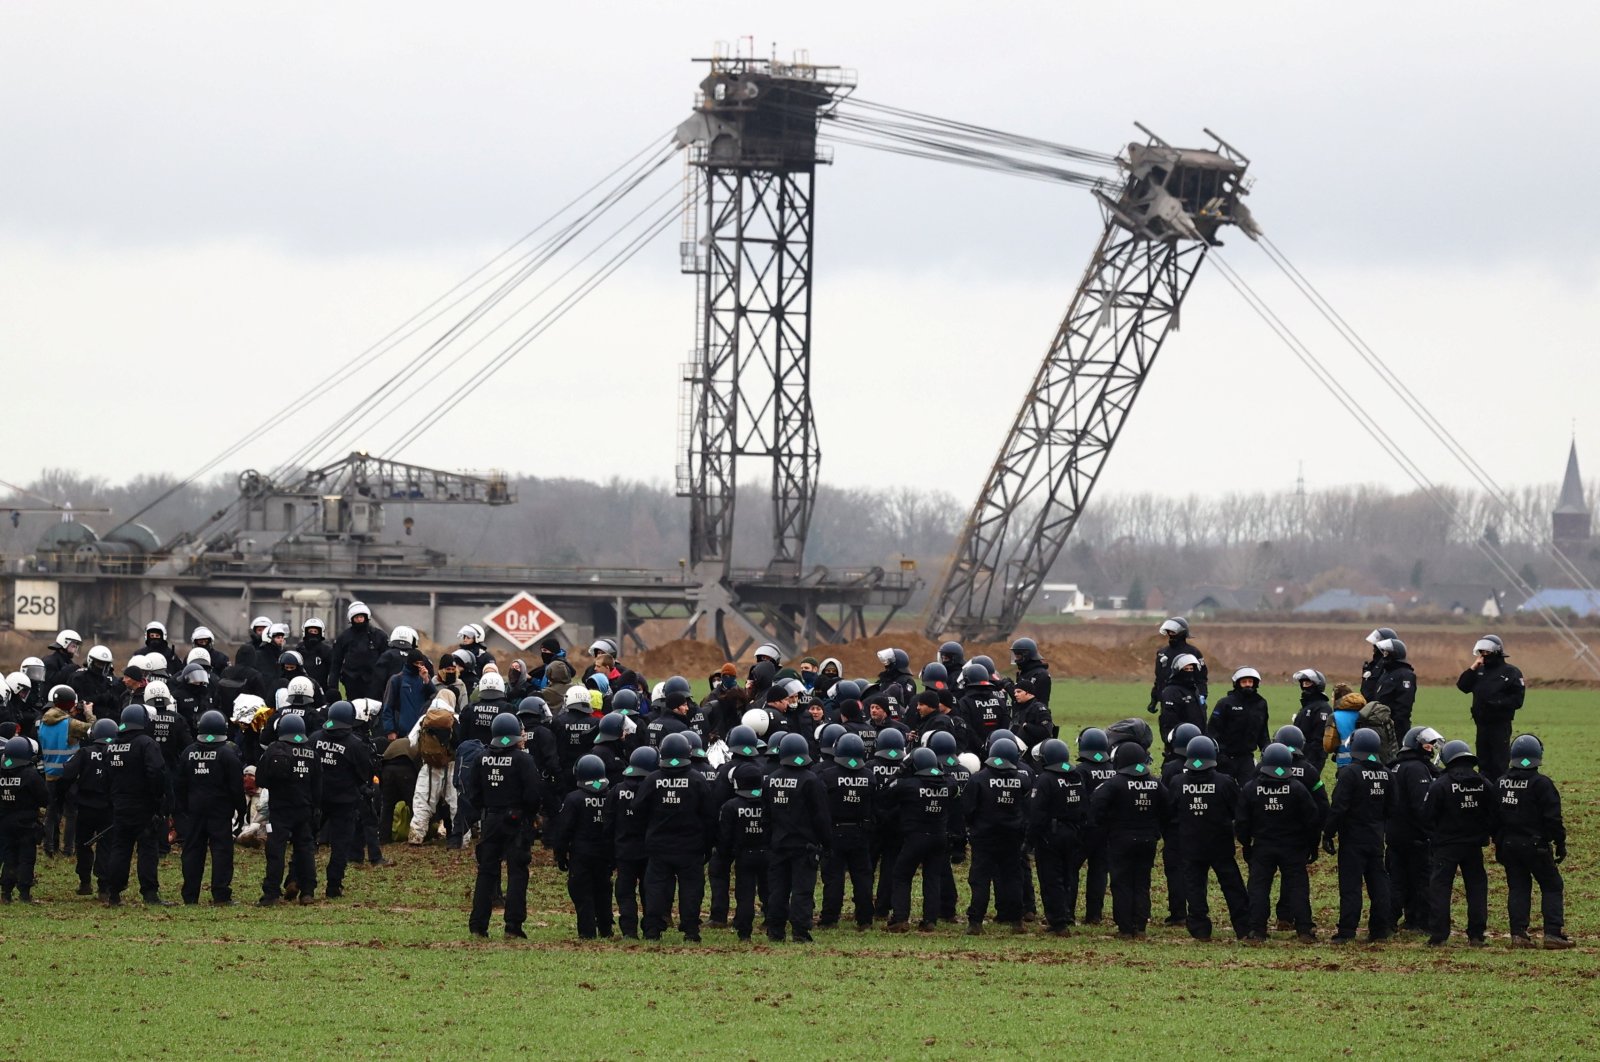 Bentrokan tambang batubara Jerman mengadu hukum dengan iklim